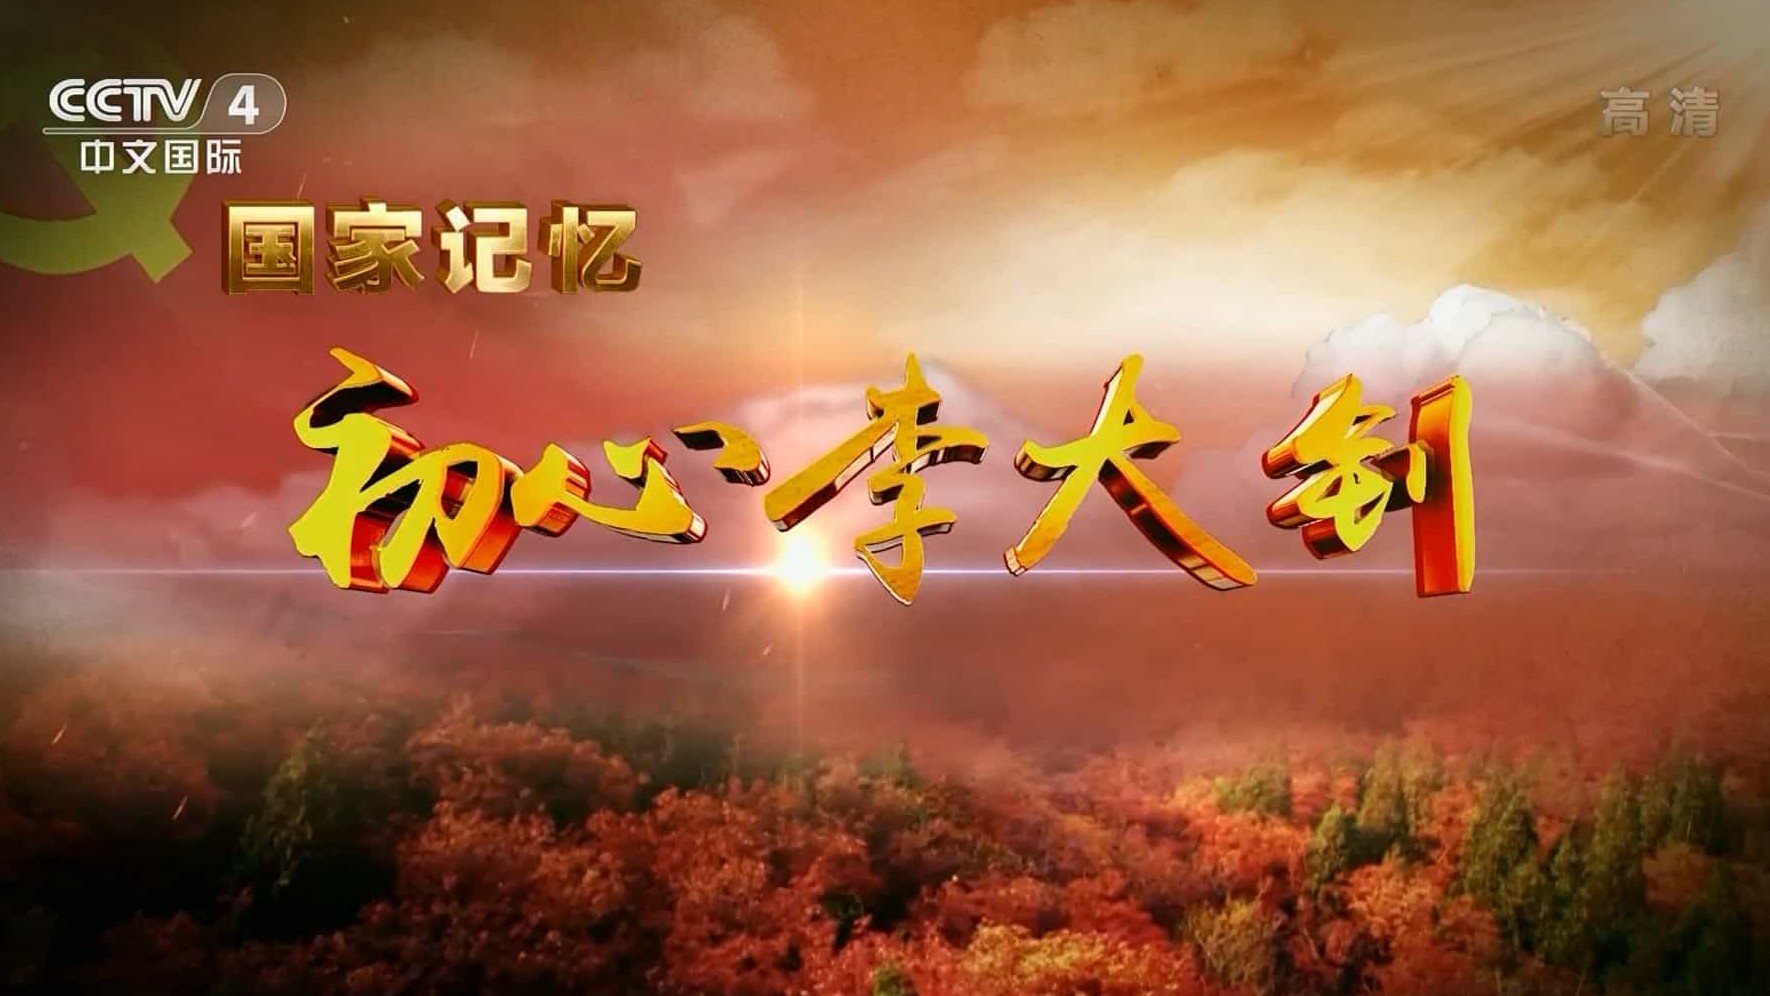 央视国家记忆系列《初心李大钊 2021》汉语中字 1080i